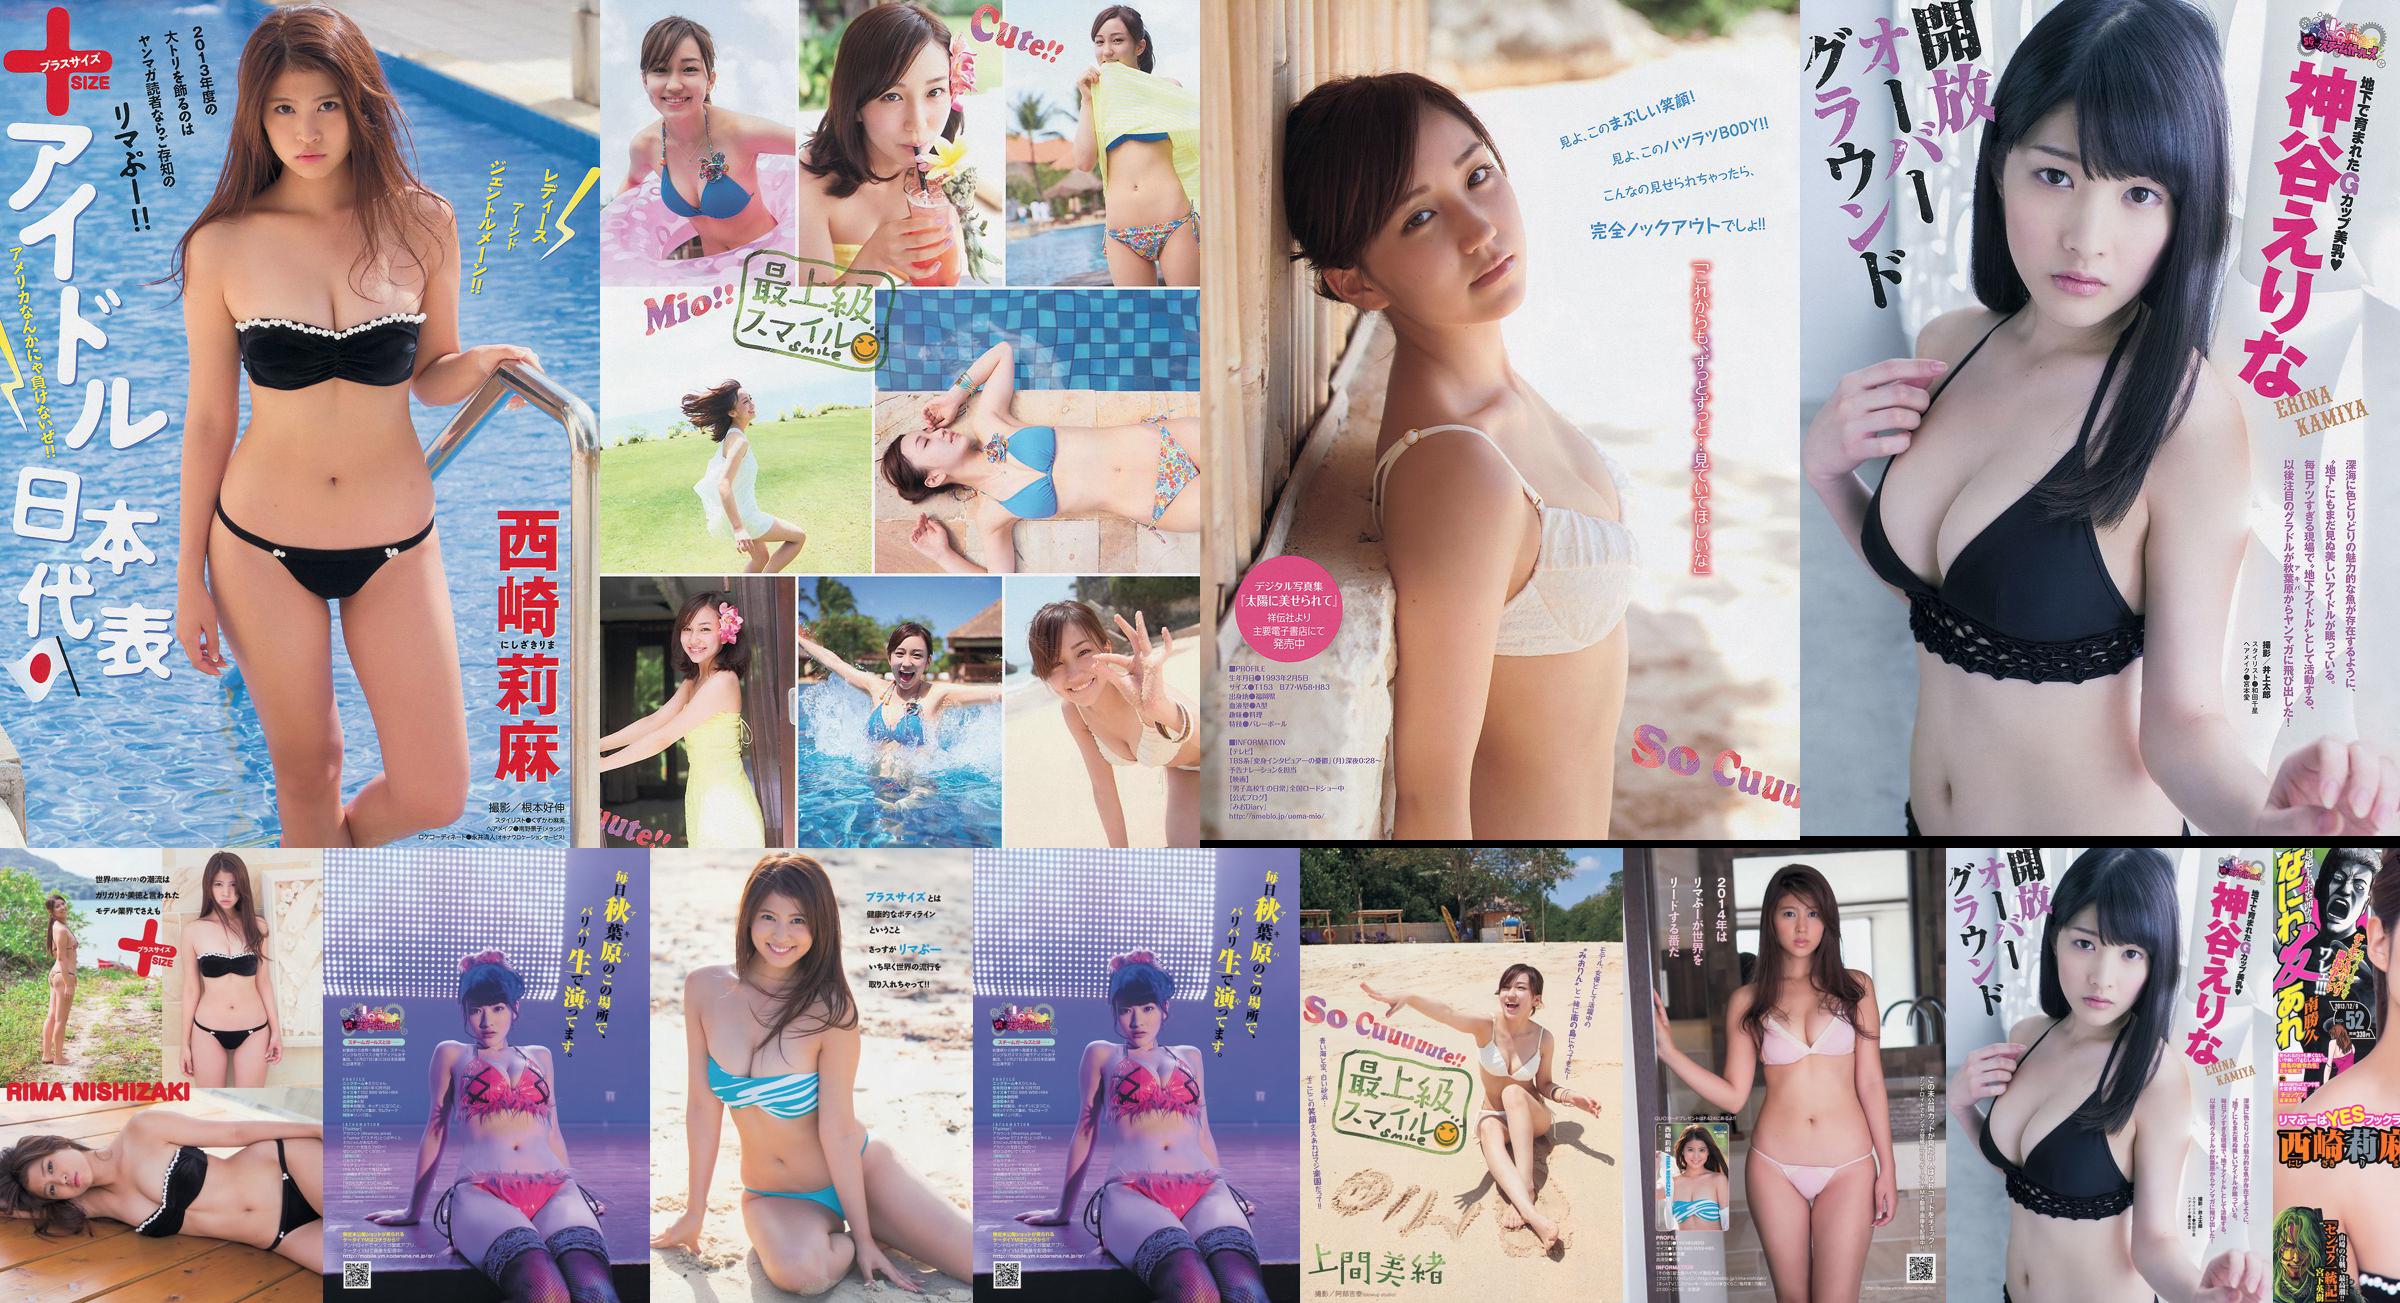 [นิตยสาร Young] Rima Nishizaki Mio Uema Erina Kamiya 2013 No.52 Photo Moshi No.0759b0 หน้า 2